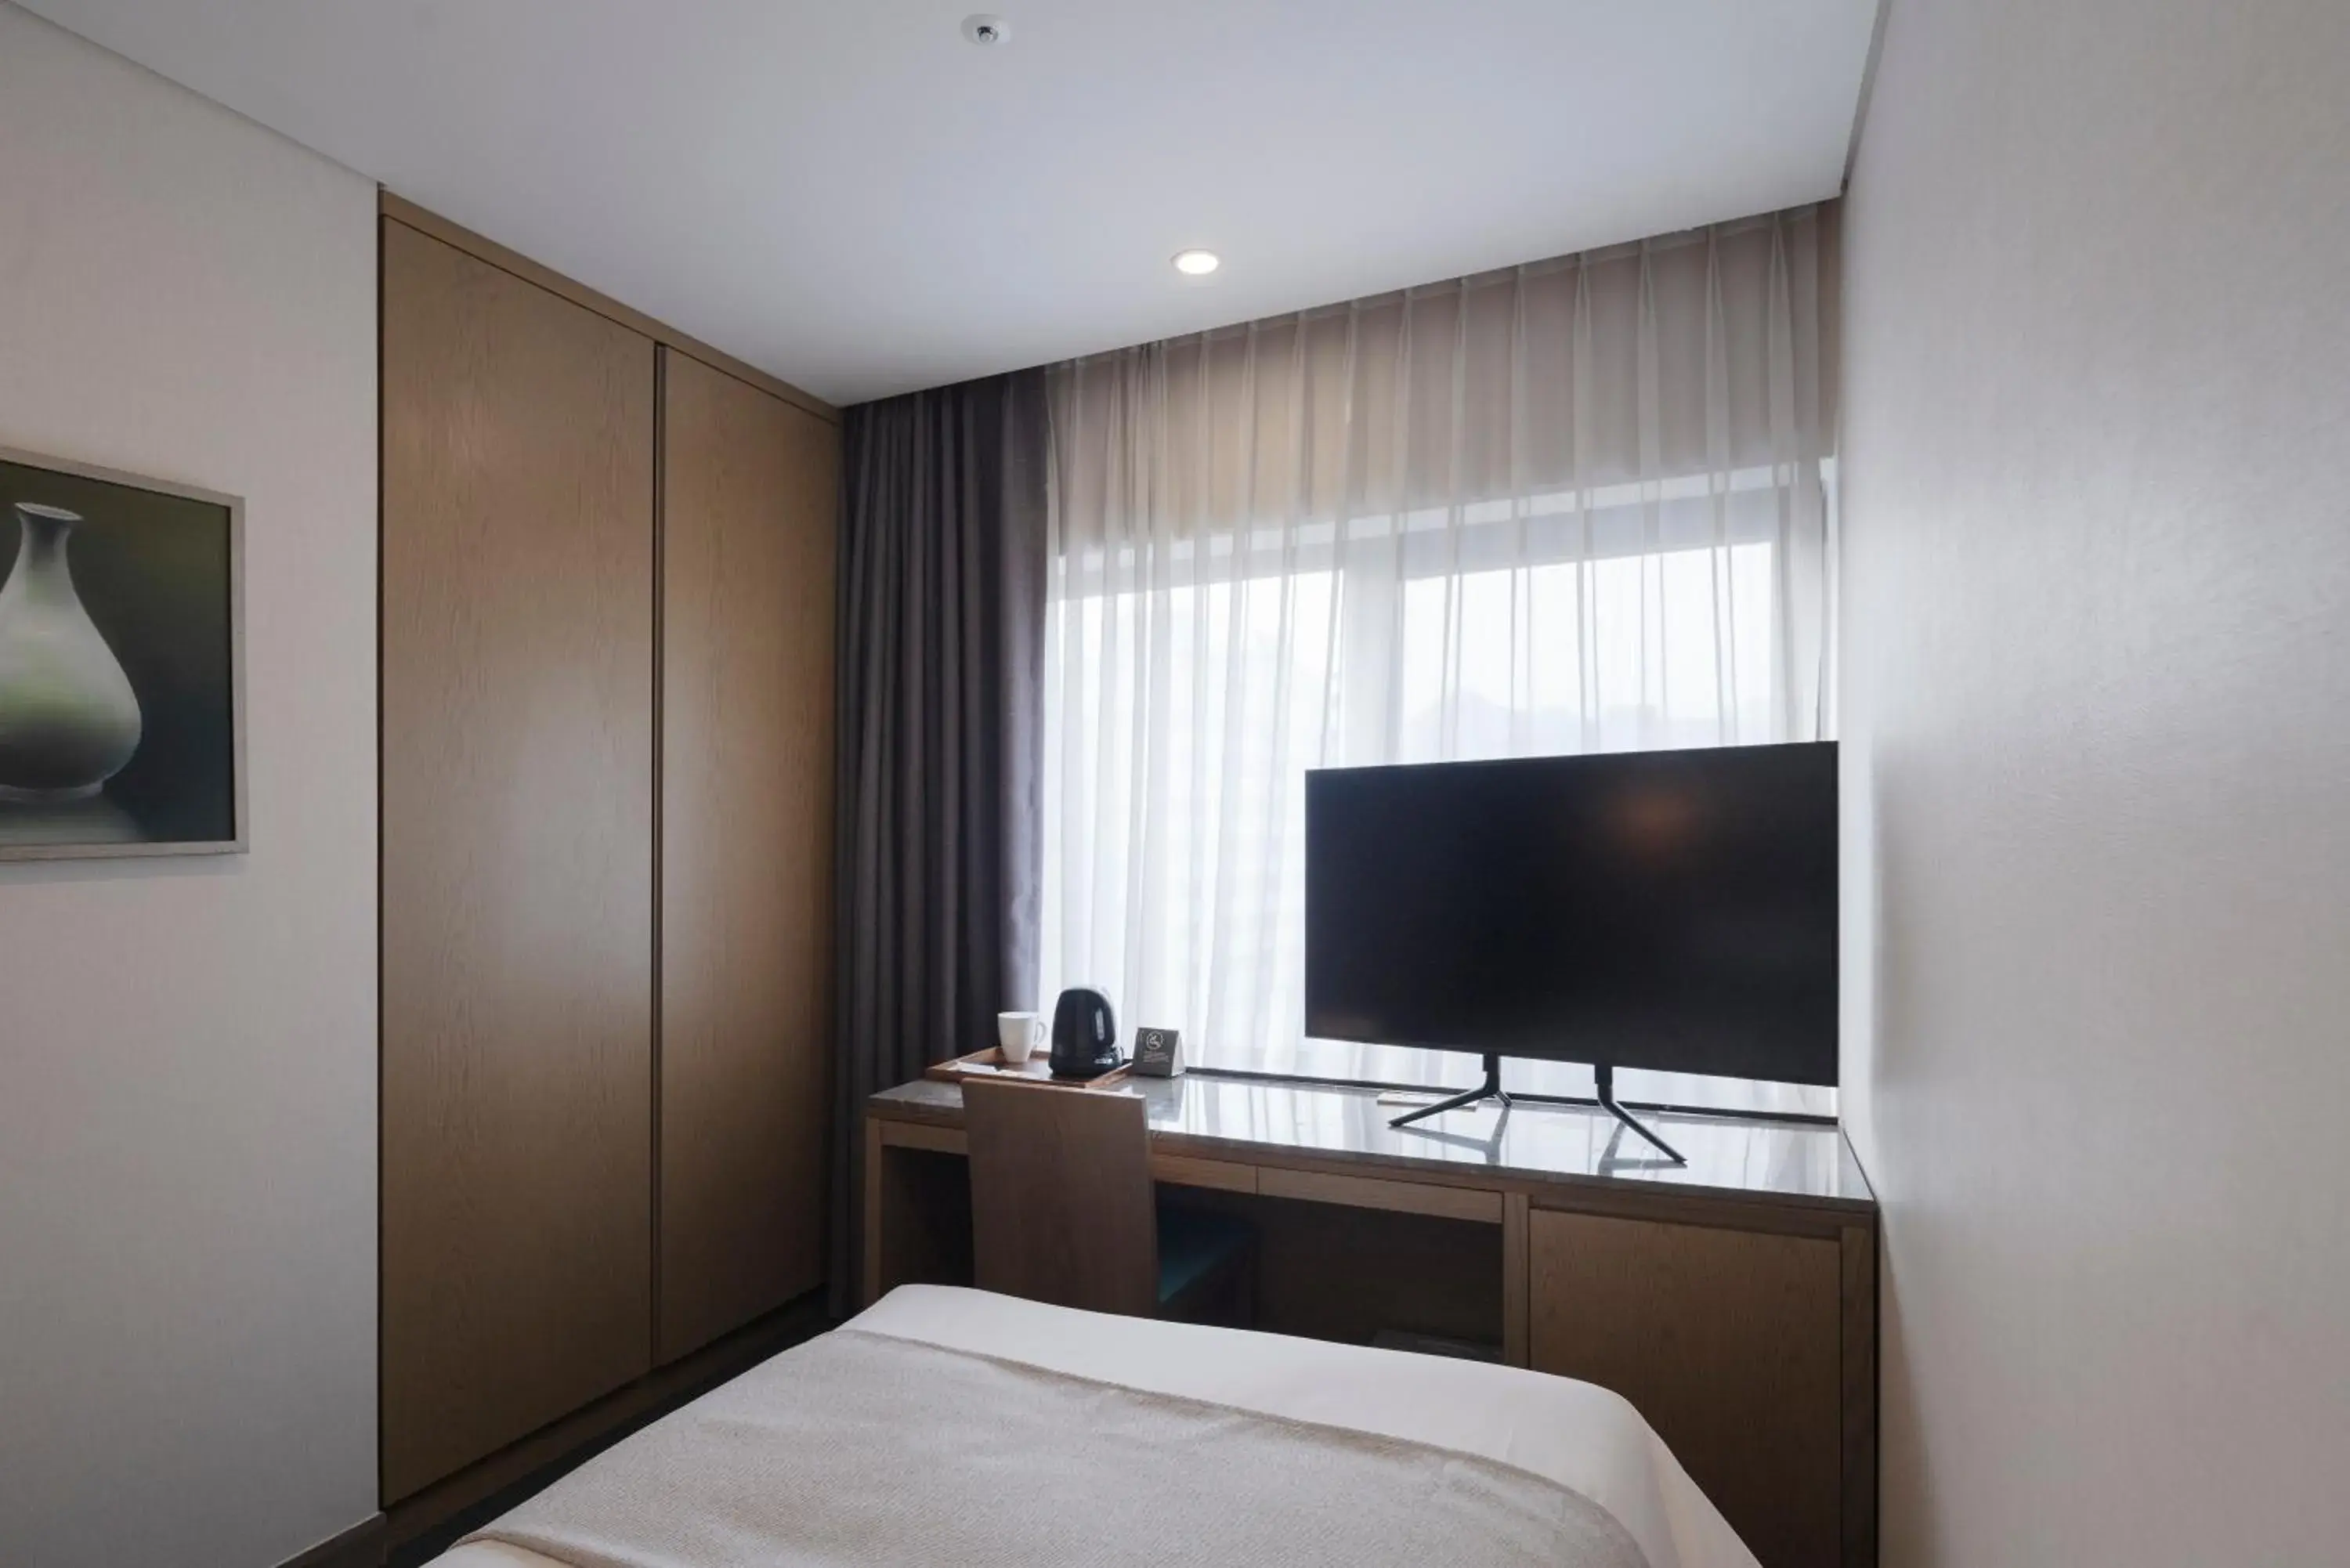 Bedroom, TV/Entertainment Center in Centermark Hotel Seoul